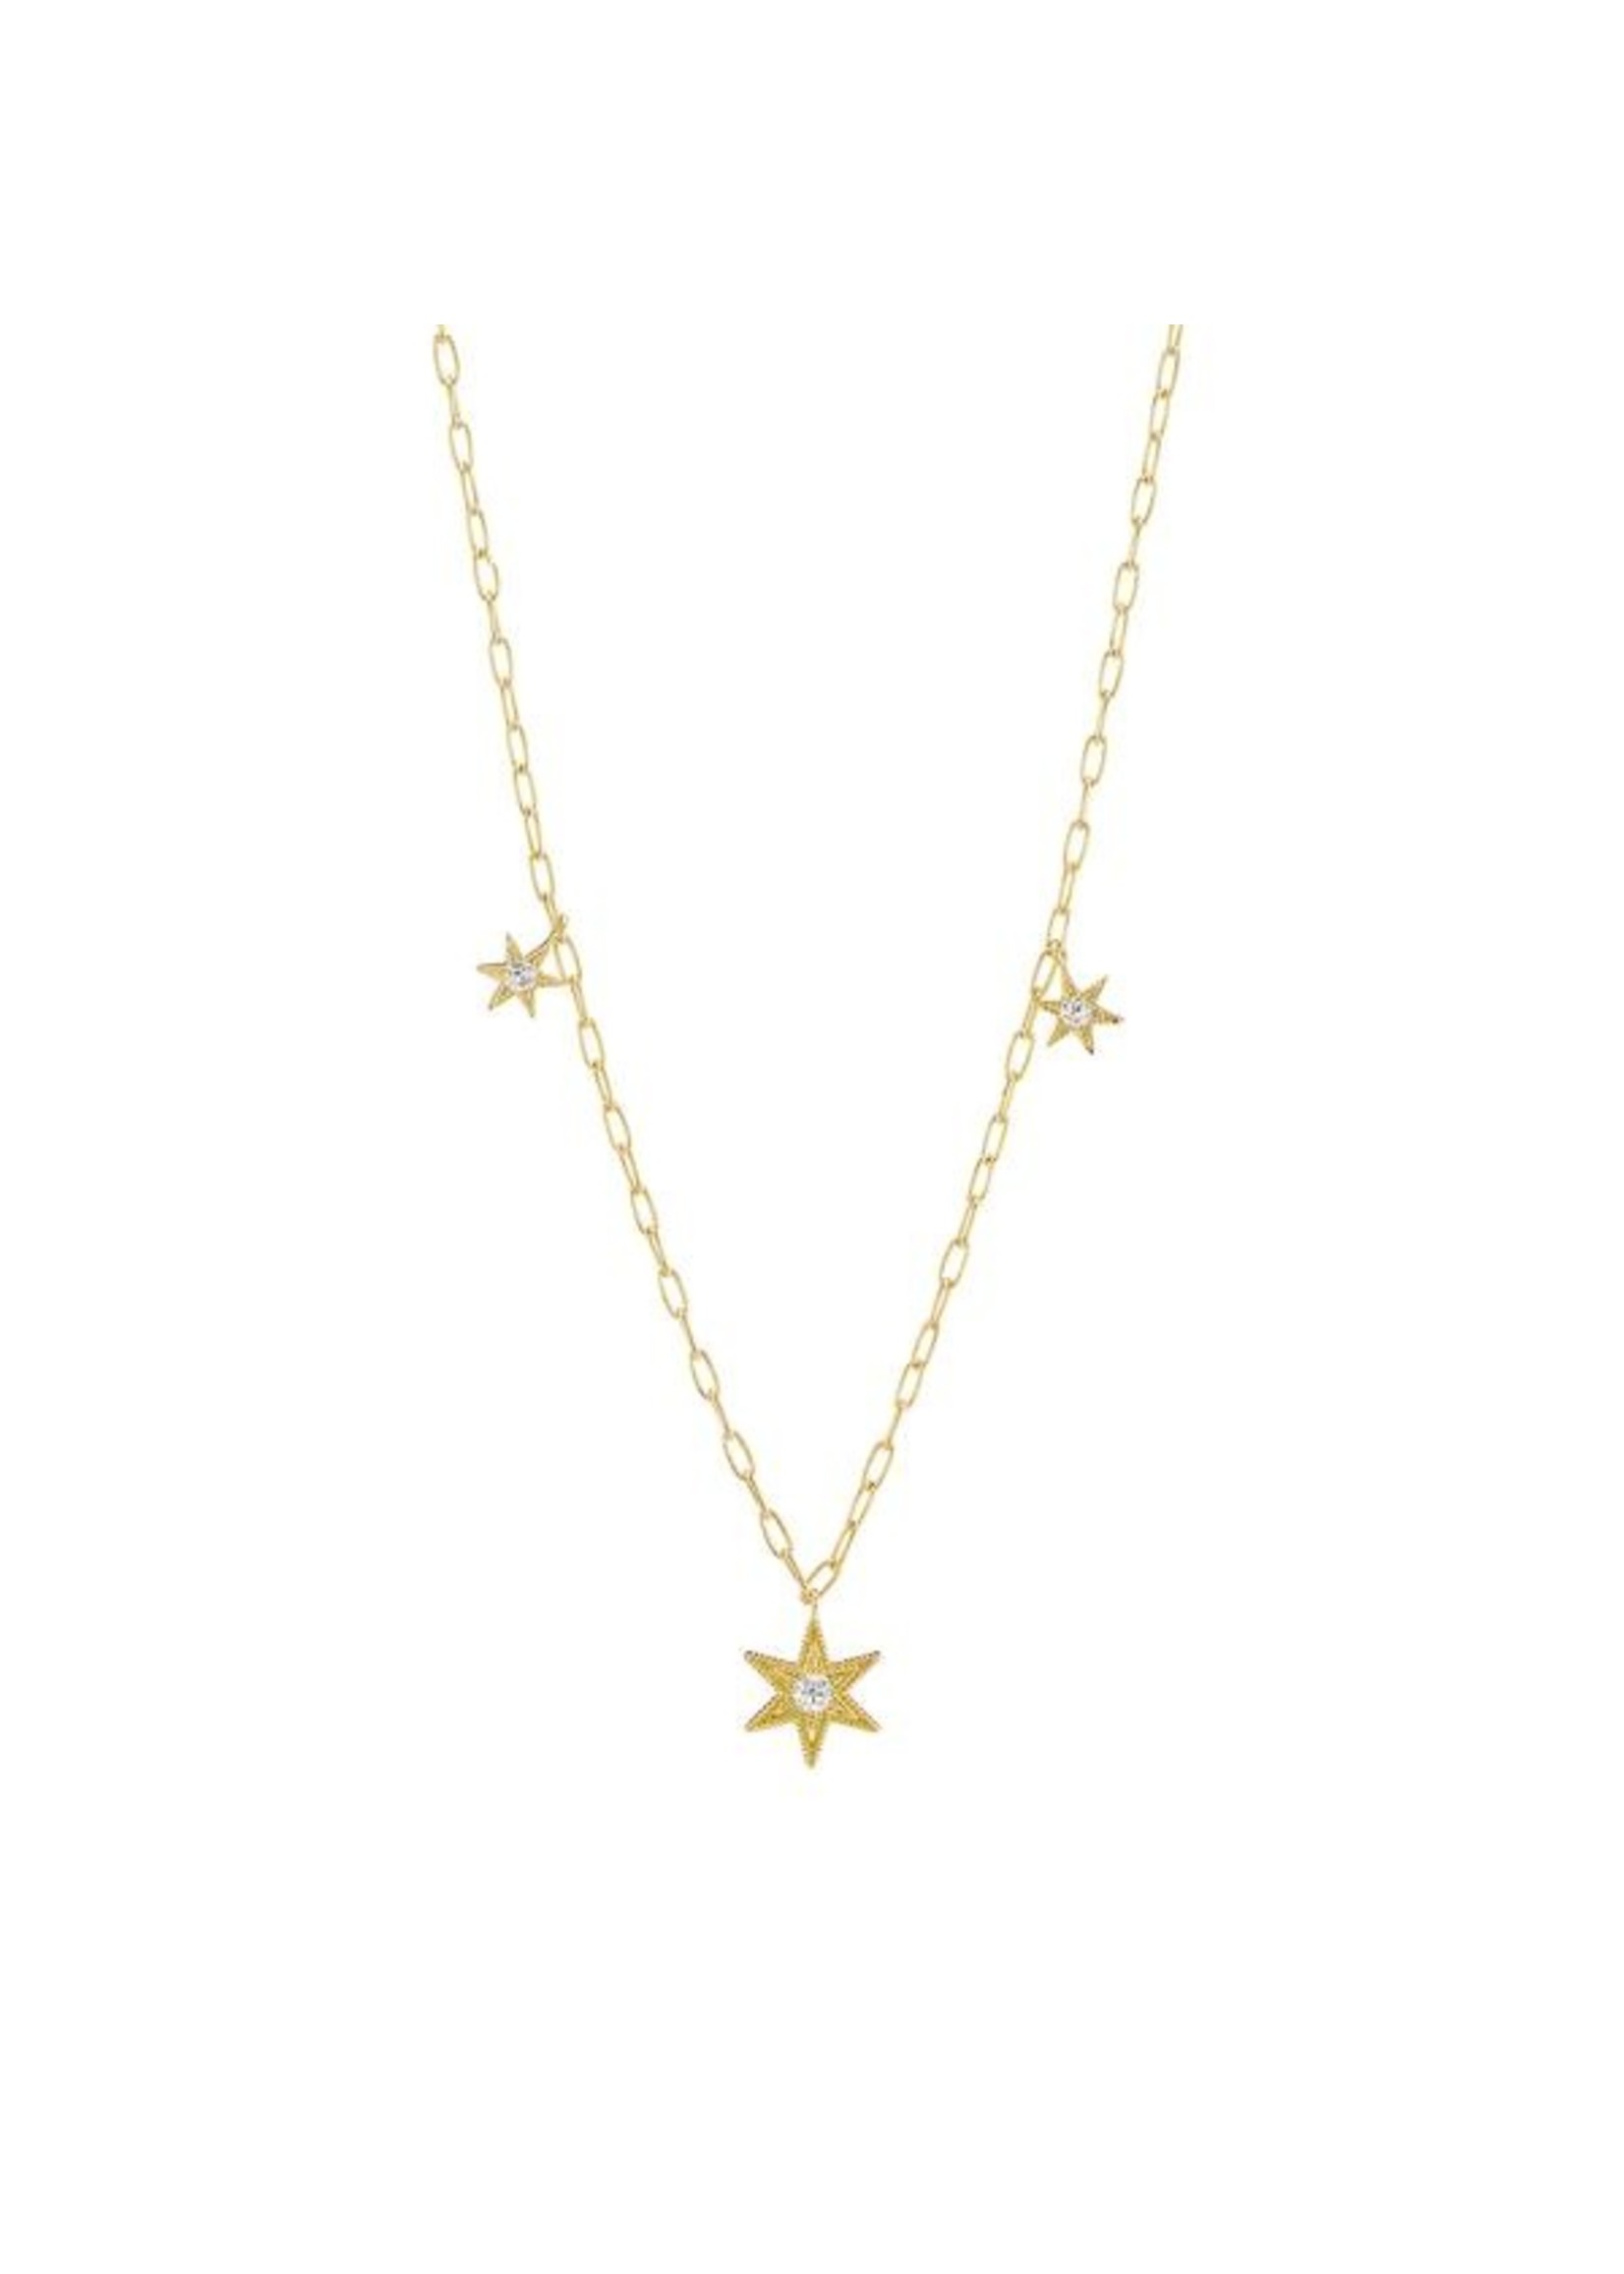 ANTHONY LENT Diamond Star Celestial Charm Necklace 18K Gold